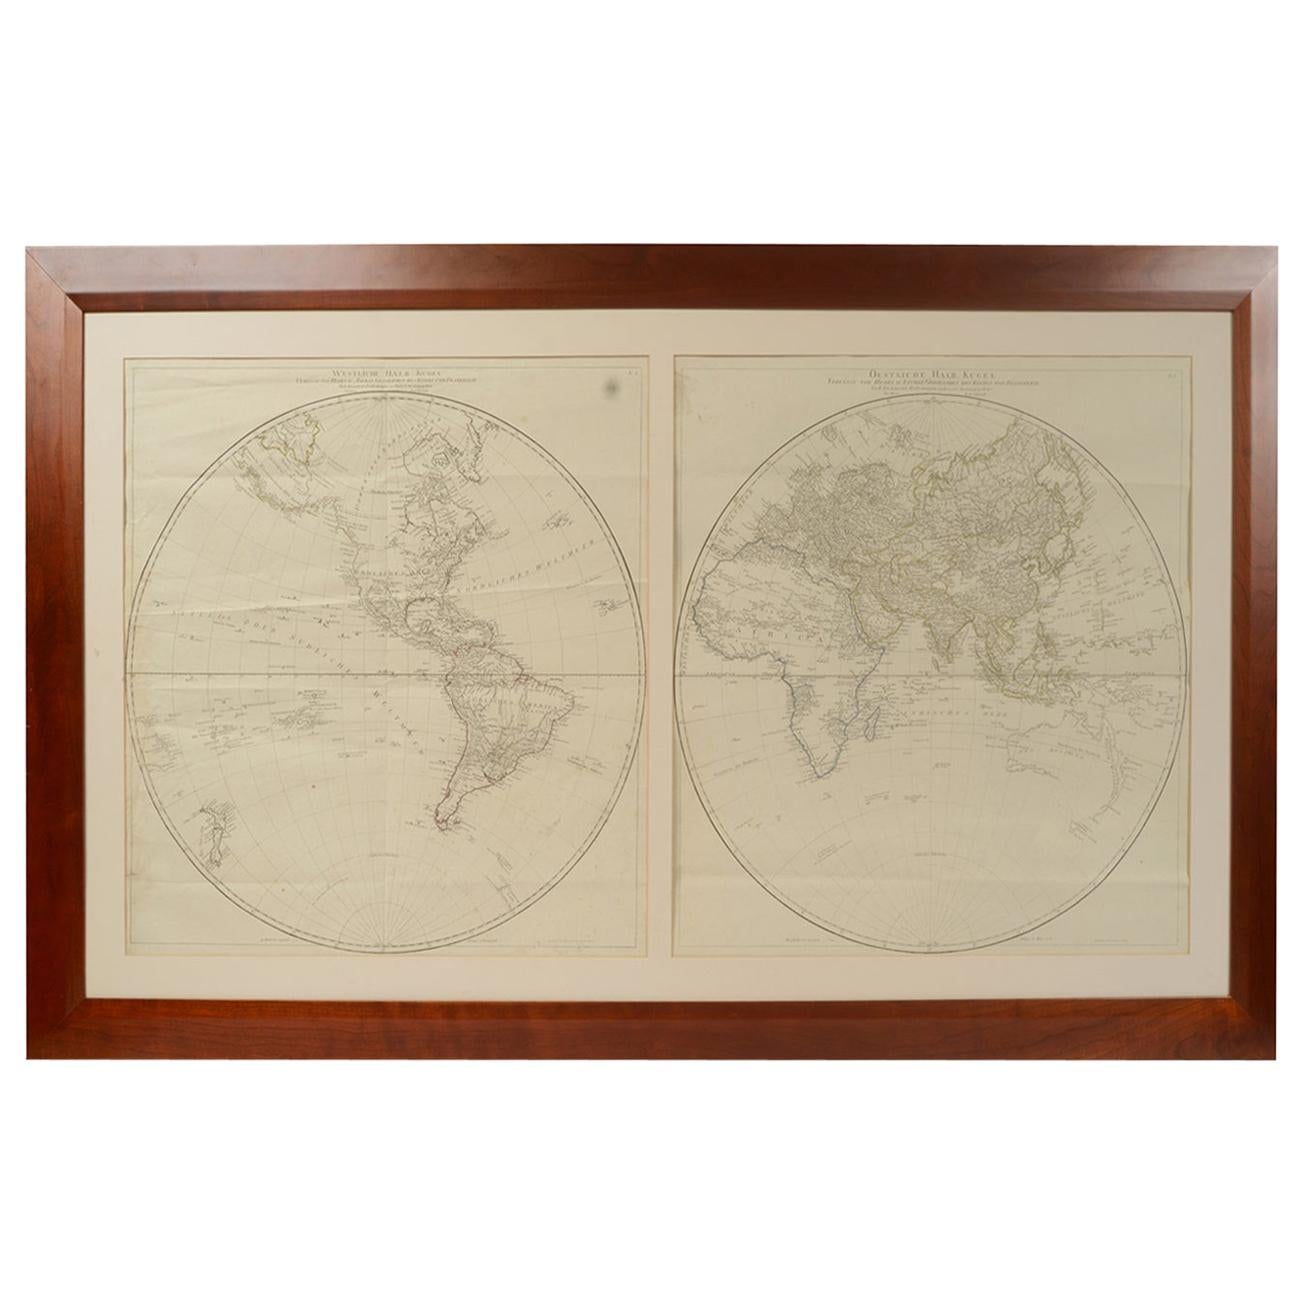 Antique World Map Published in Vienna 1786 by Franz Anton Schraembl